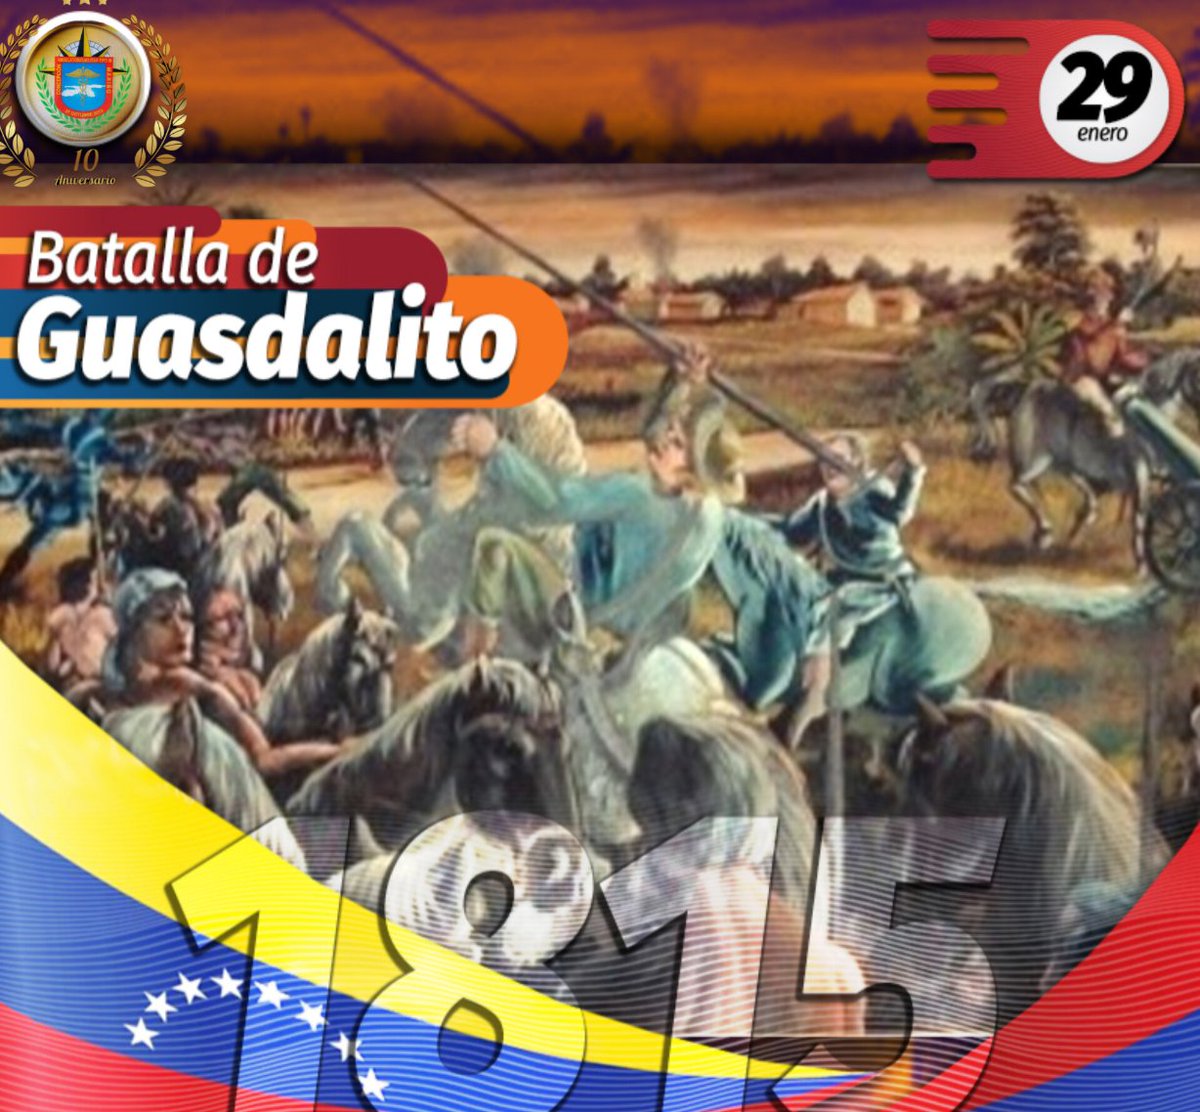 #29deEnero
La Batalla de Guasdualito fue el primer hecho armado, ocurrido en territorio venezolano, posterior a la pérdida de la segunda República, el enfrentamiento militar sucedido el 29 de enero de 1815.
#RedSanitariaMilitar
#ambumilcm